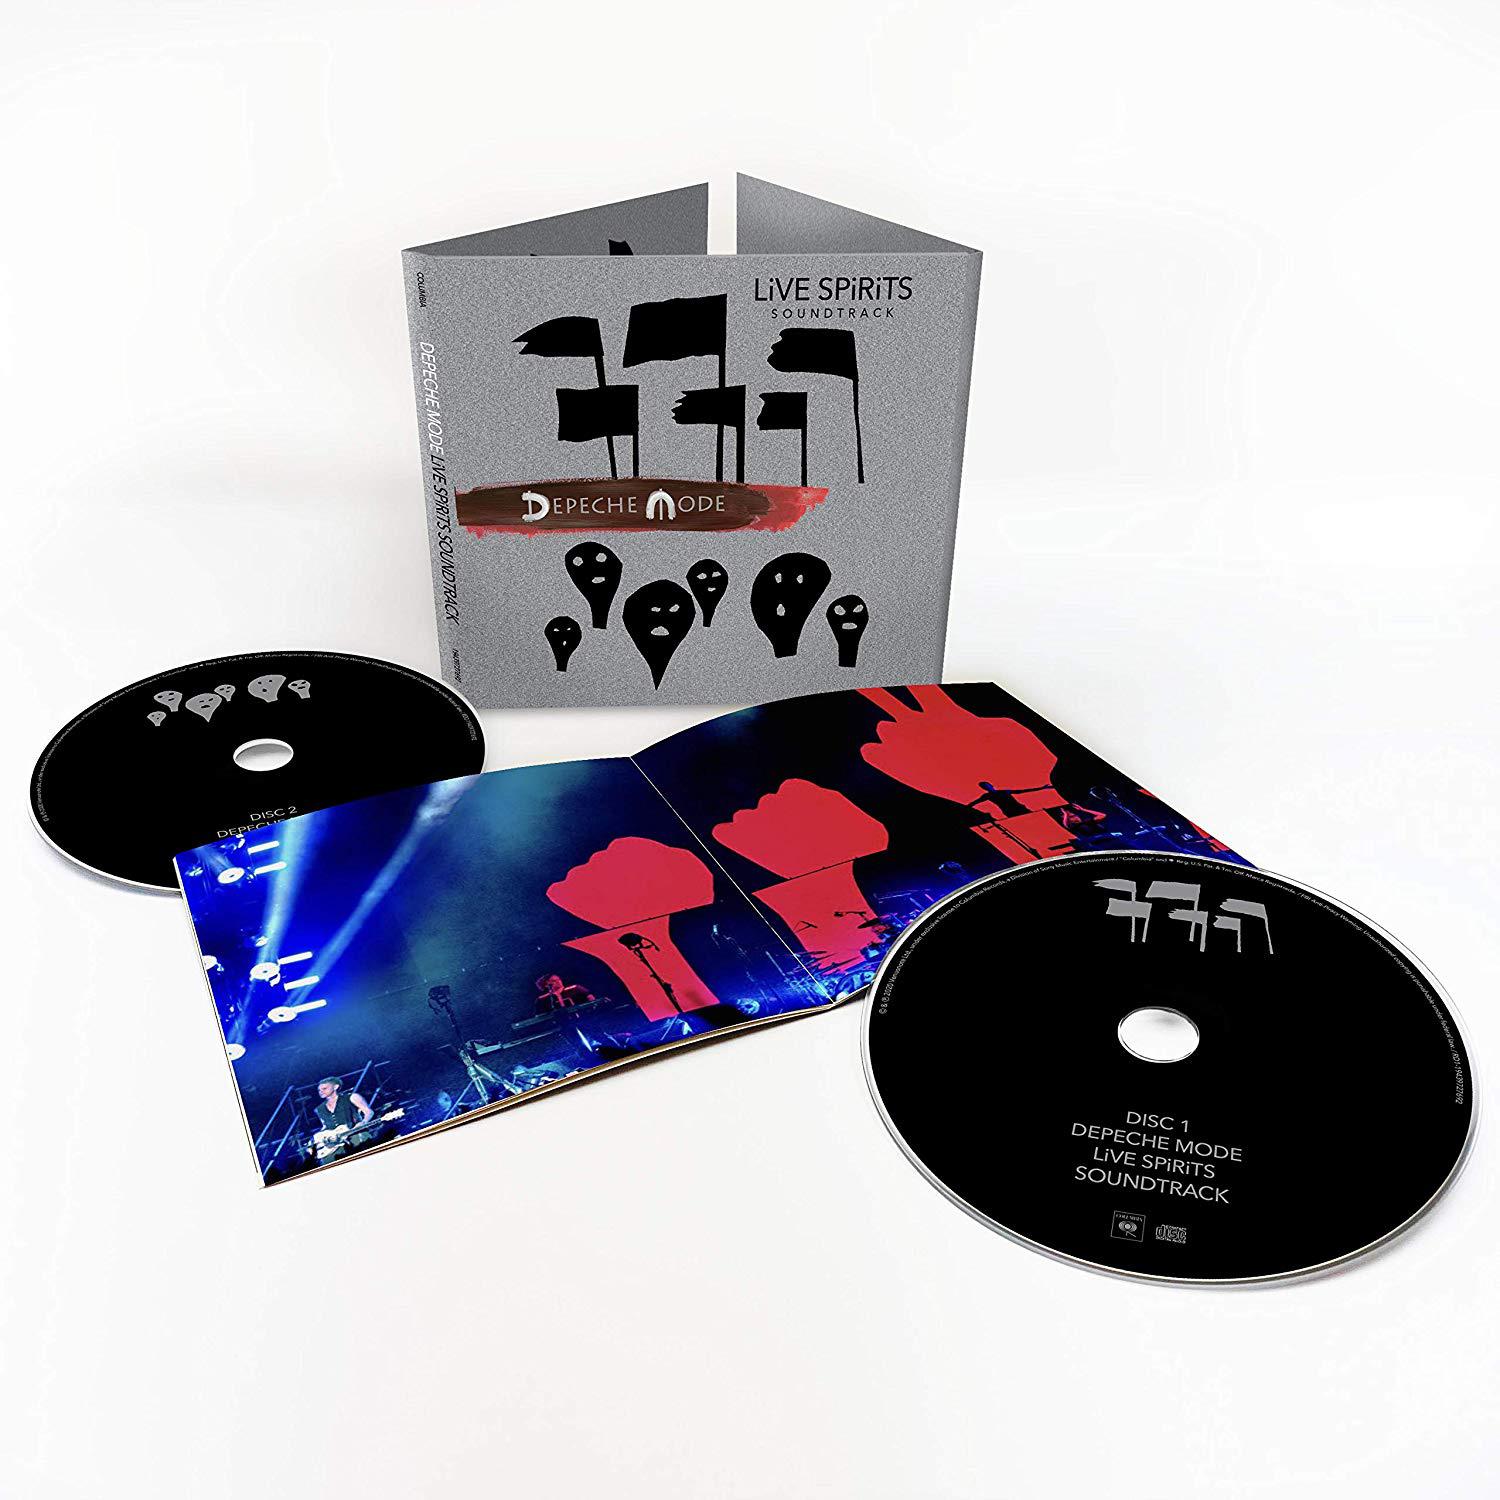 LiVE SPiRiTS Soundtrack by Depeche Mode (CD)